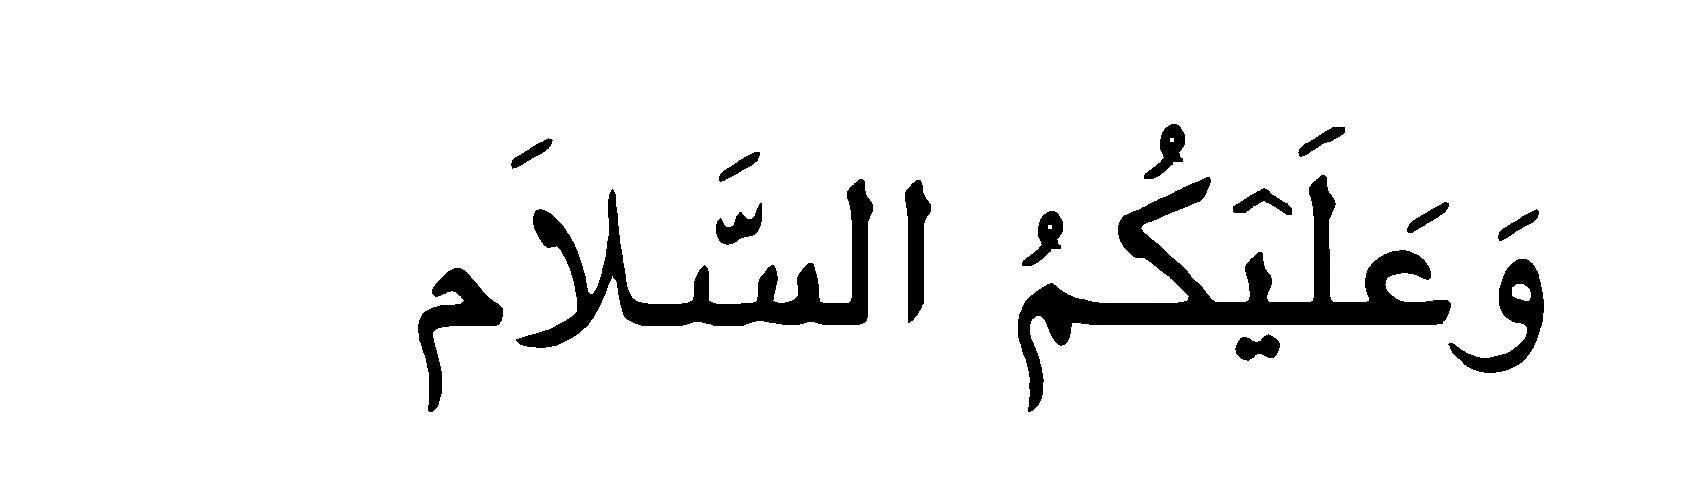 Салям на арабском. Салам алейкум на арабском. Приветствие на арабском языке. АС саляму алейкум на арабском языке. Арабский язык открытка